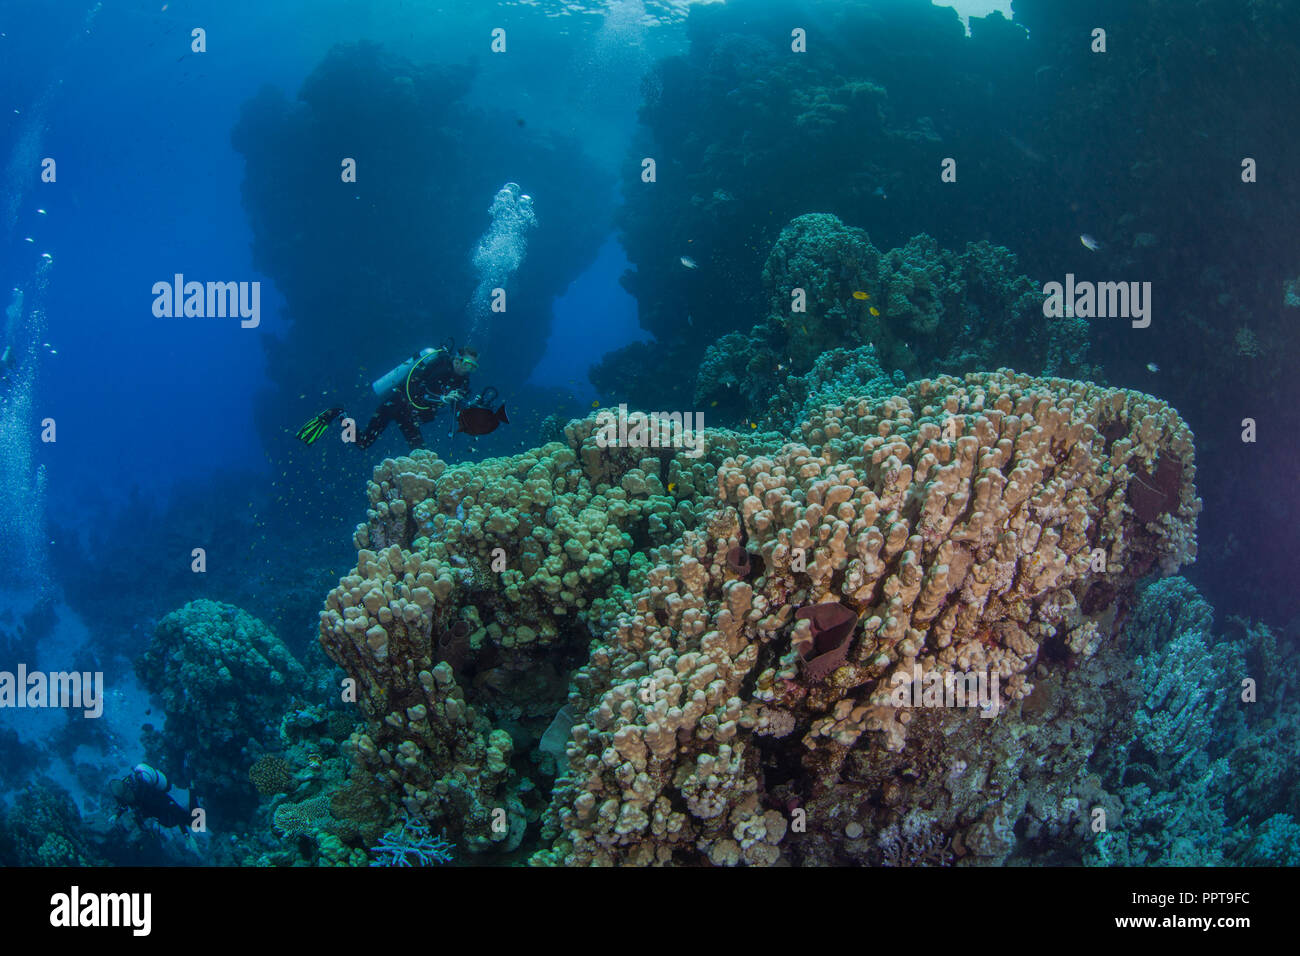 Plongeur femelle, vidéaste de la vie marine dans les documents liés à l'écosystème Porite coraux dans la mer Rouge. Septembre, 2018 Banque D'Images